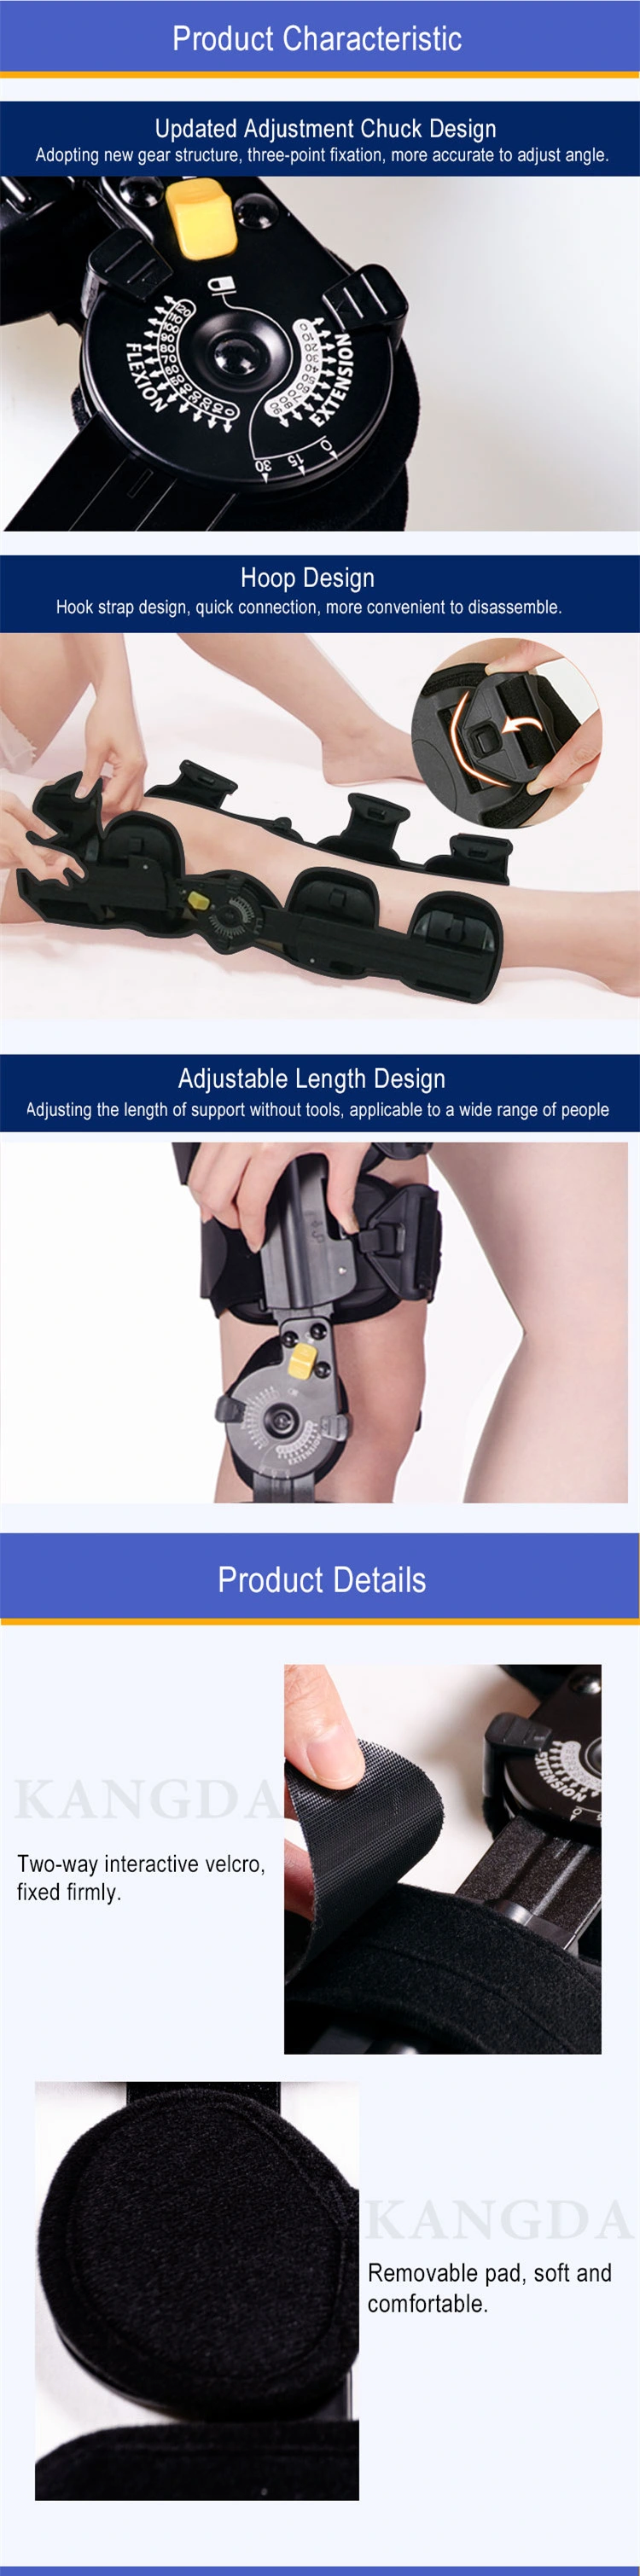 Tool Free Adjustable Knee Brace for Knee Injury